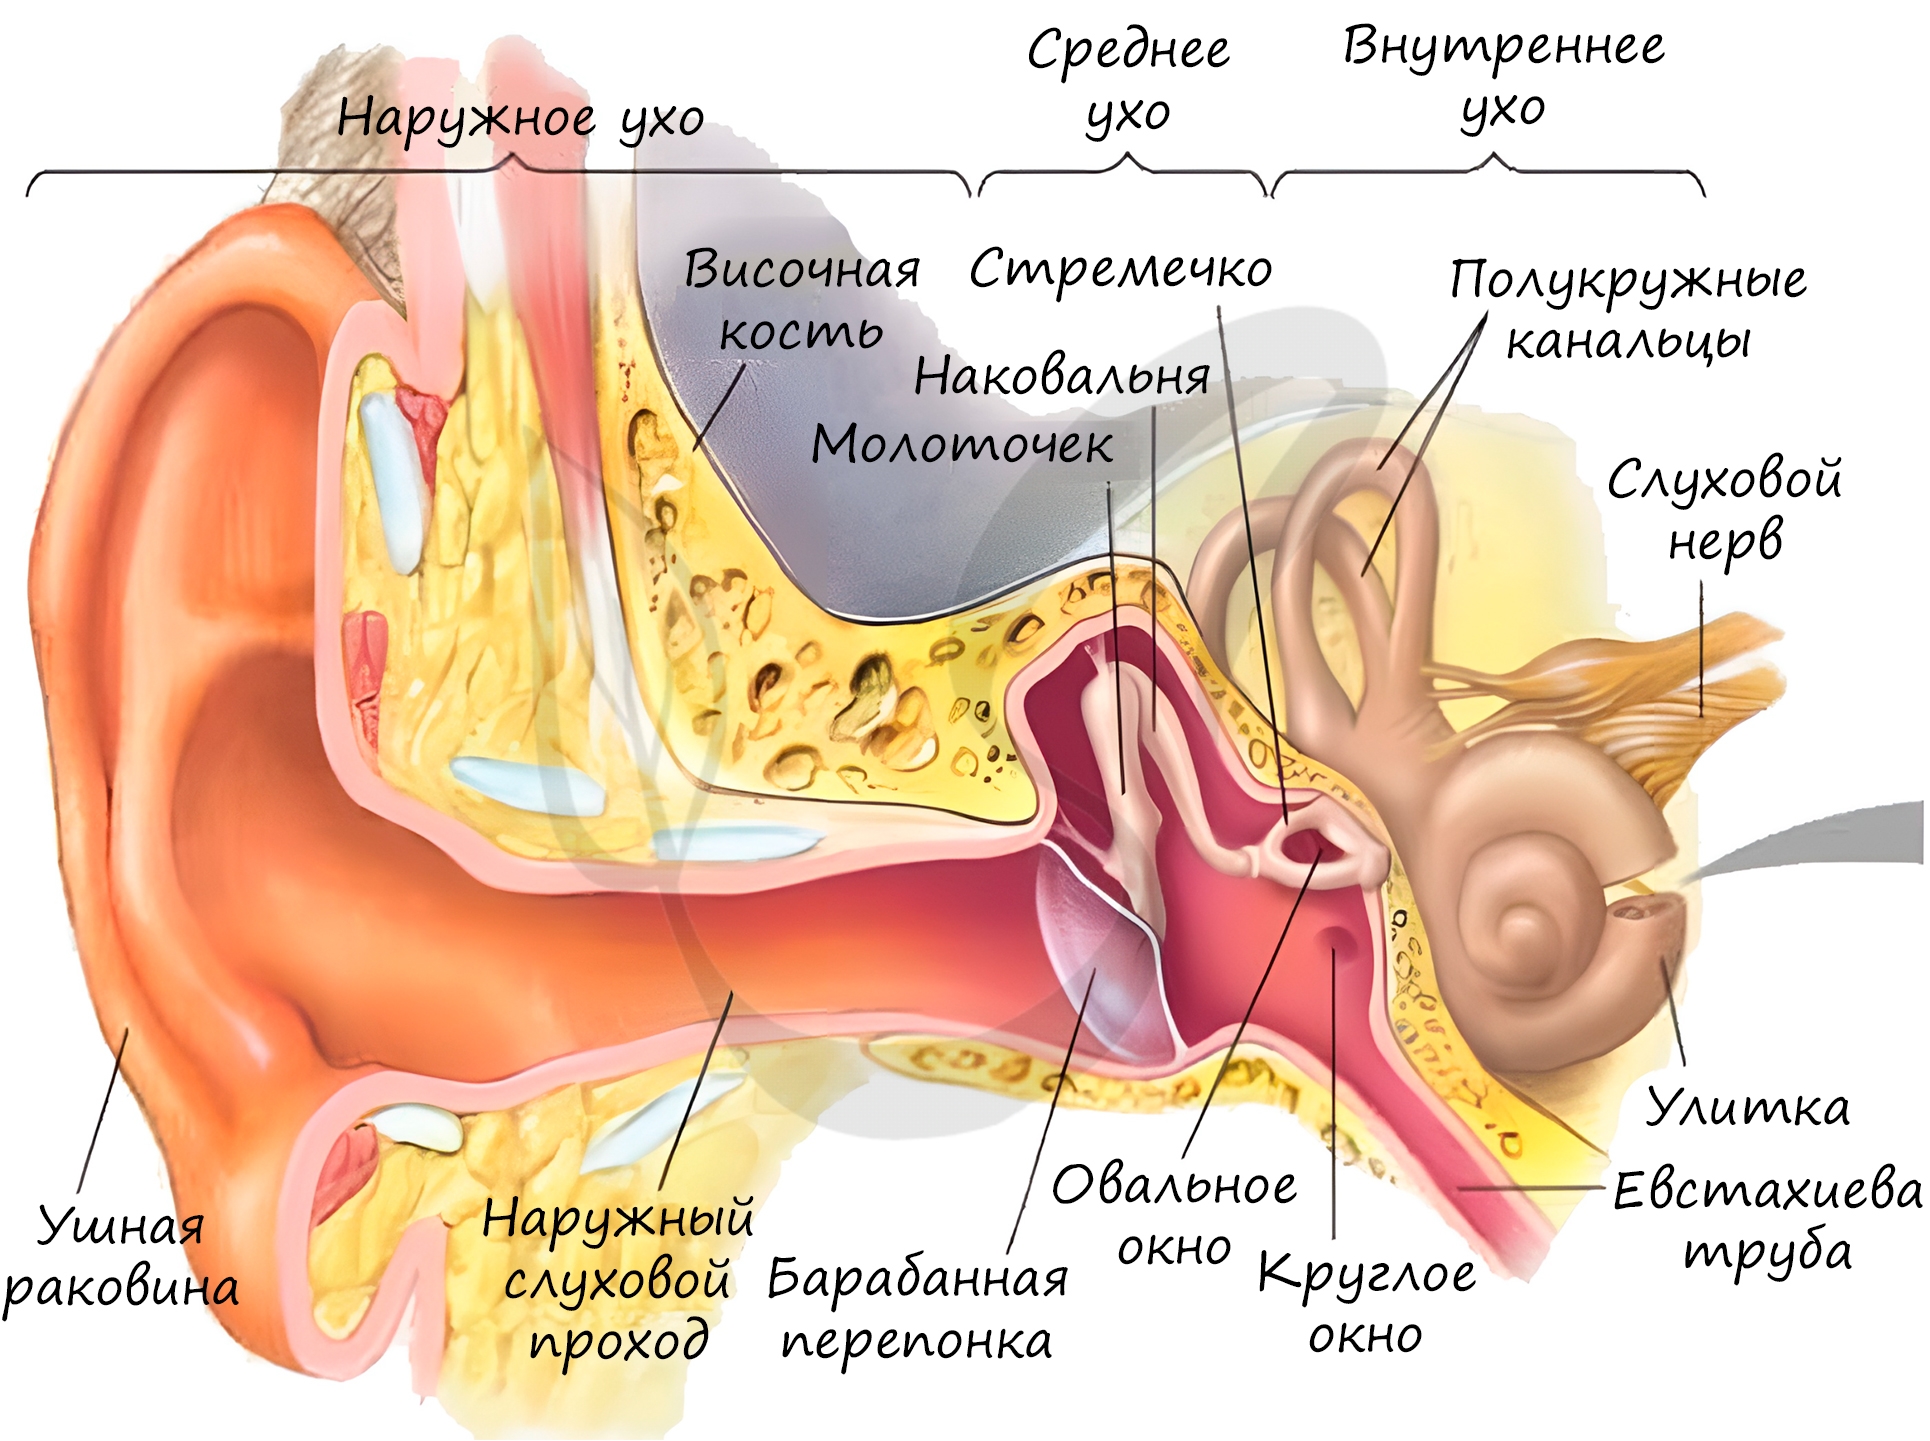 Кость ушной раковины. Строение уха человека евстахиева труба. Орган слуха наружное ухо среднее ухо внутреннее ухо. Строение наружного уха барабанная перепонка. Орган слуха внутреннее ухо анатомия.